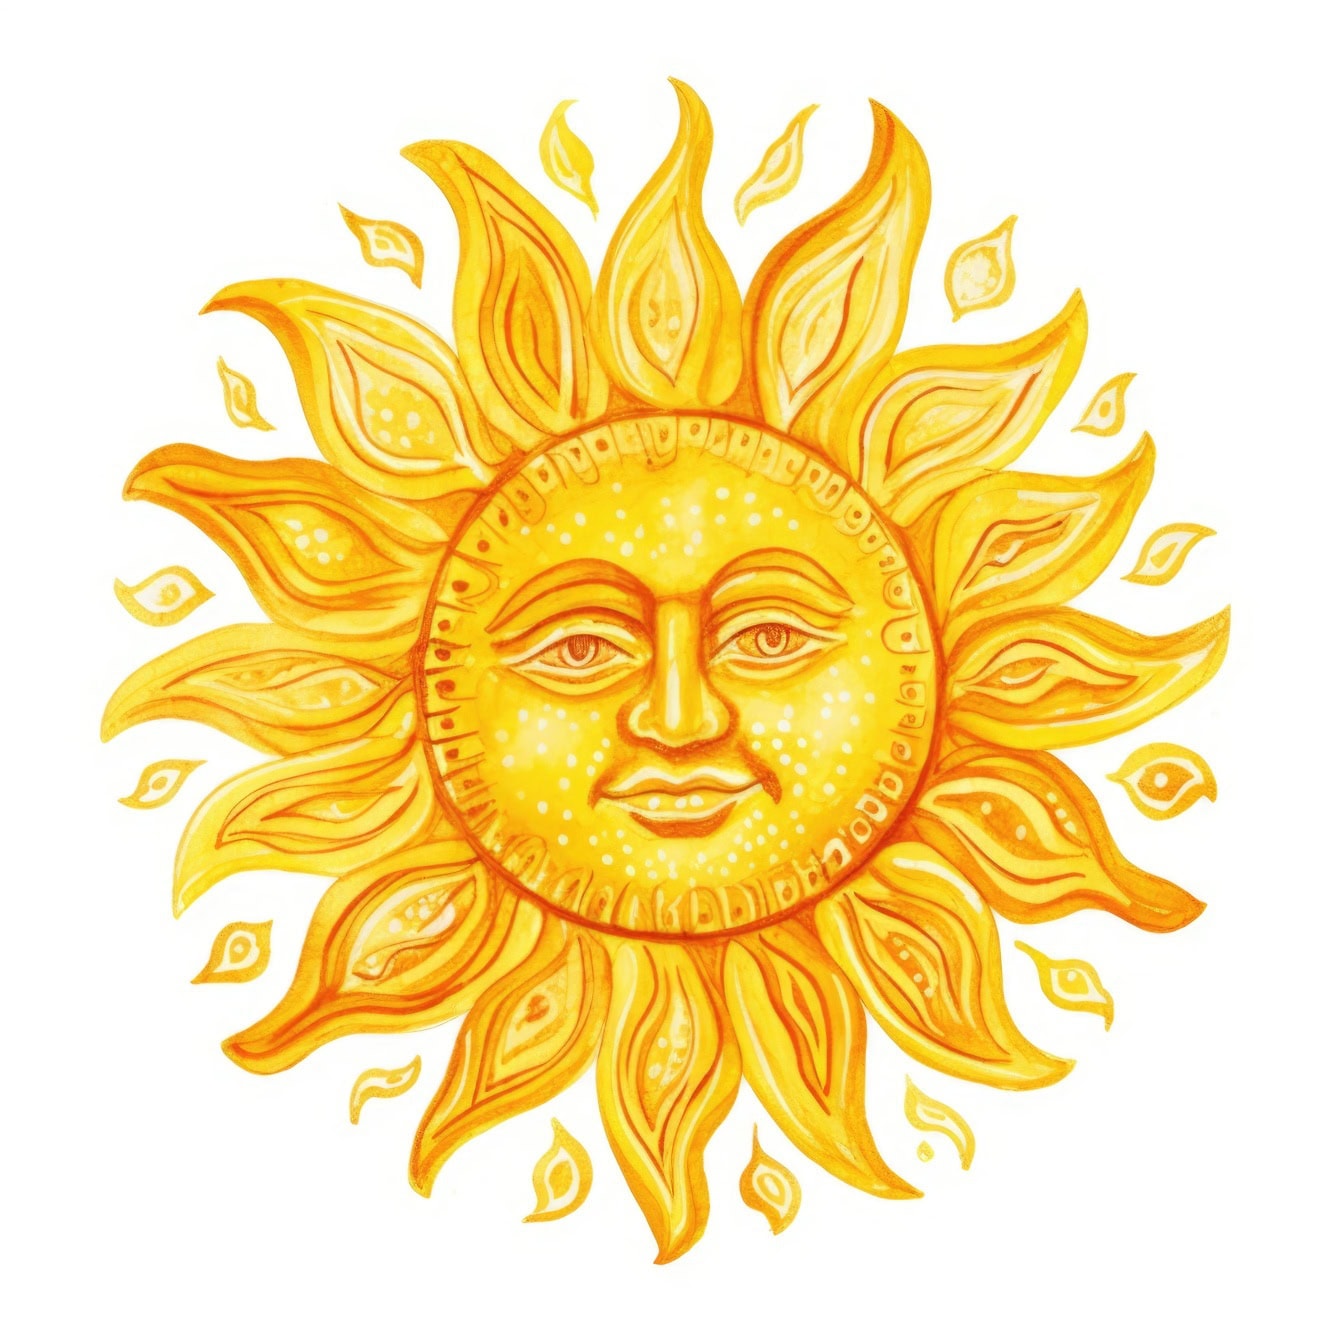 Grafische illustratie van een oranje-gele zon met een gezicht op een witte achtergrond